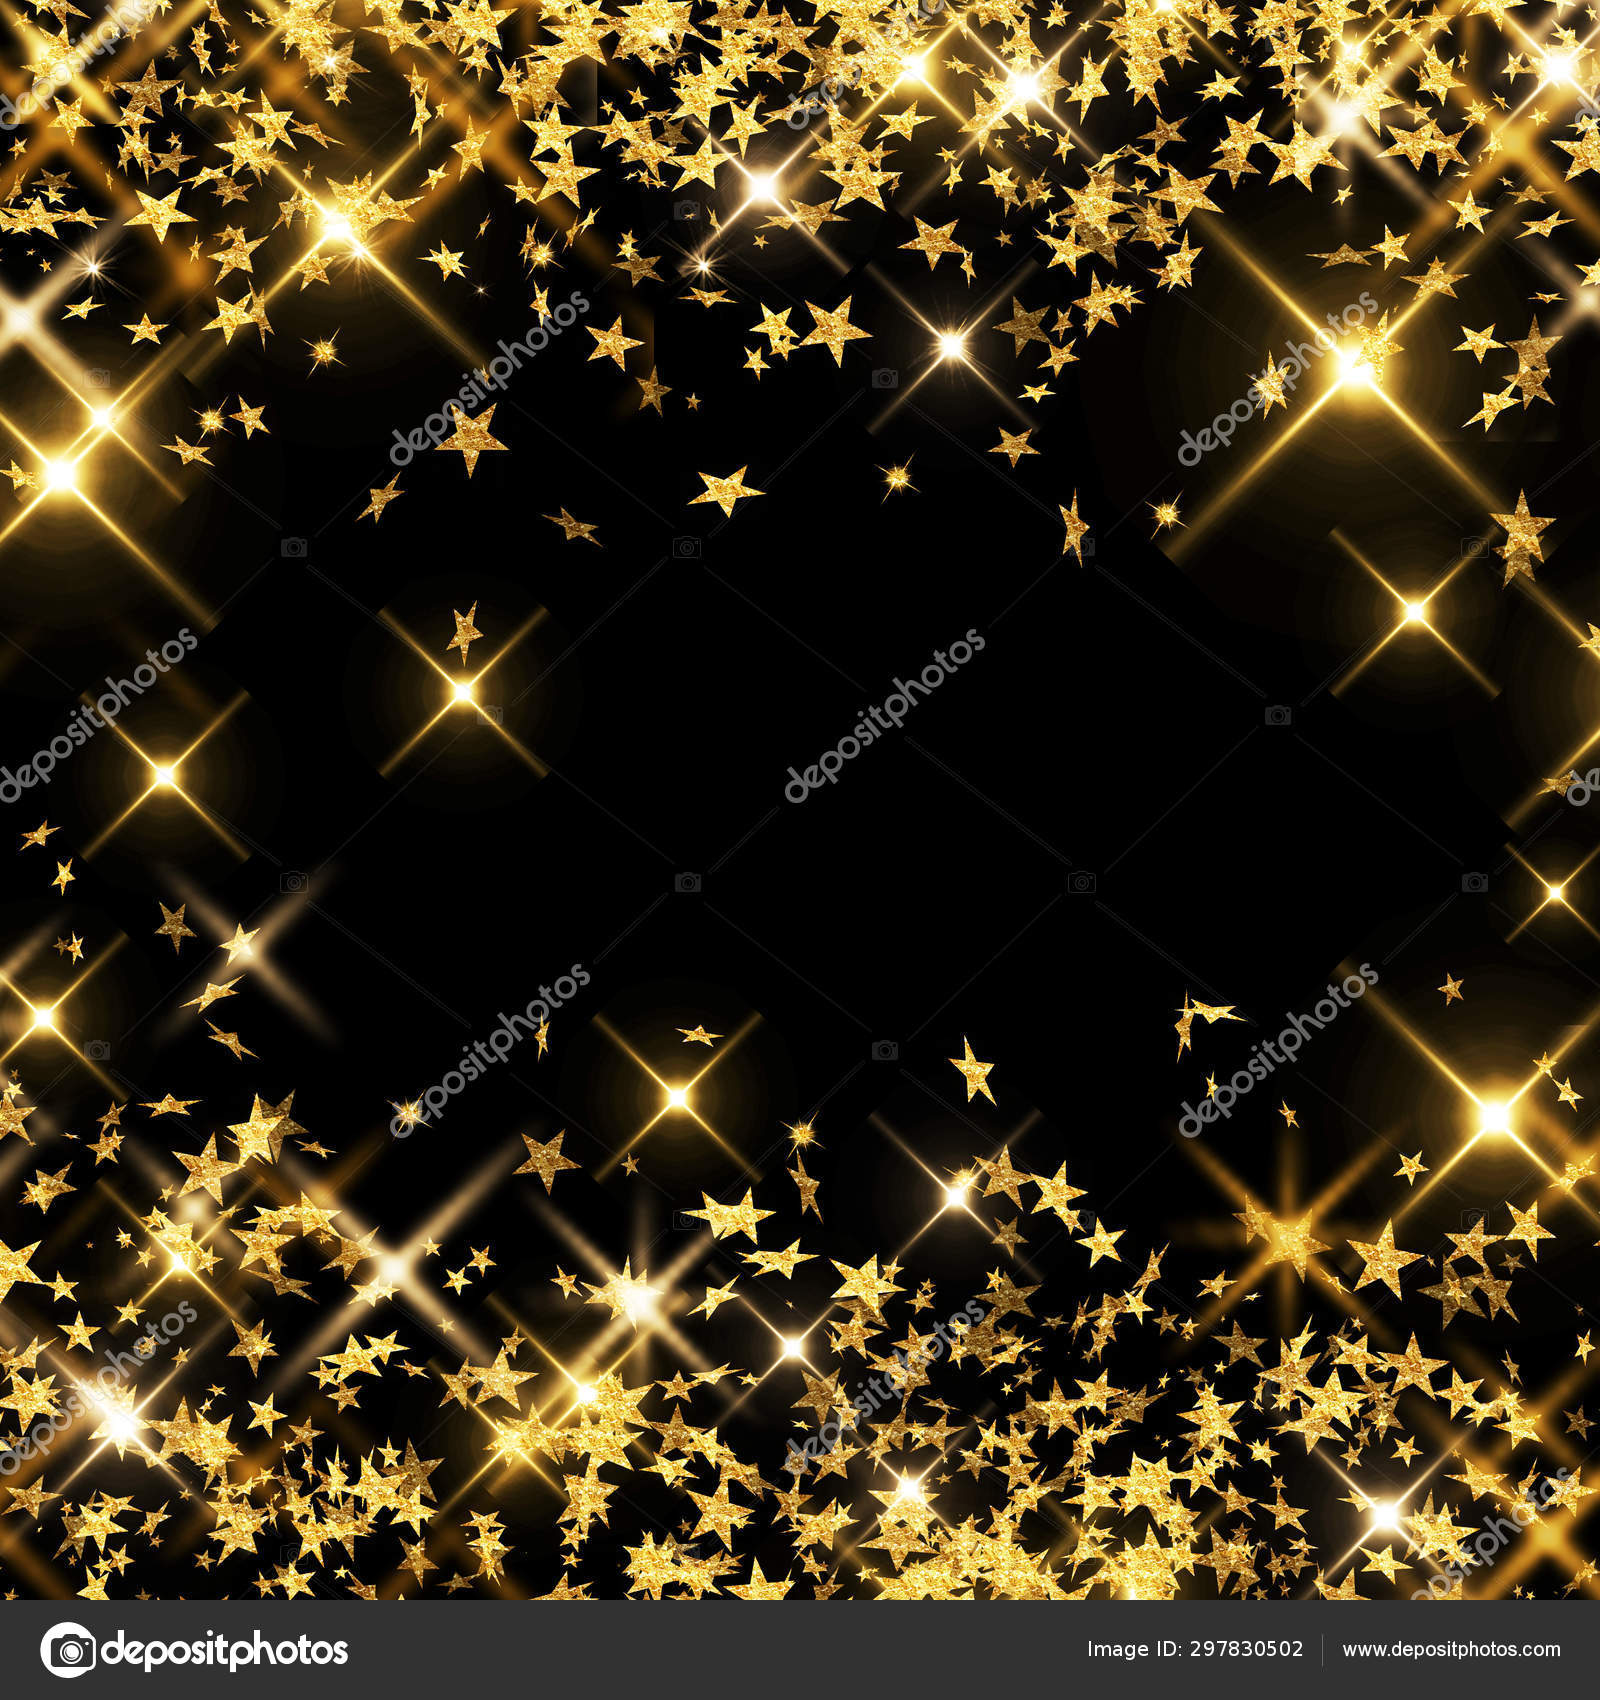 Mưa sao vàng trên nền đen: Nếu bạn muốn một hình nền đầy bản sắc, đem lại cảm giác bình yên và yên tĩnh, hãy chọn một bức hình mưa sao vàng trên nền đen. Sự kết hợp hoàn hảo giữa hai yếu tố này thực sự làm cho hình ảnh trở nên độc đáo và thu hút.